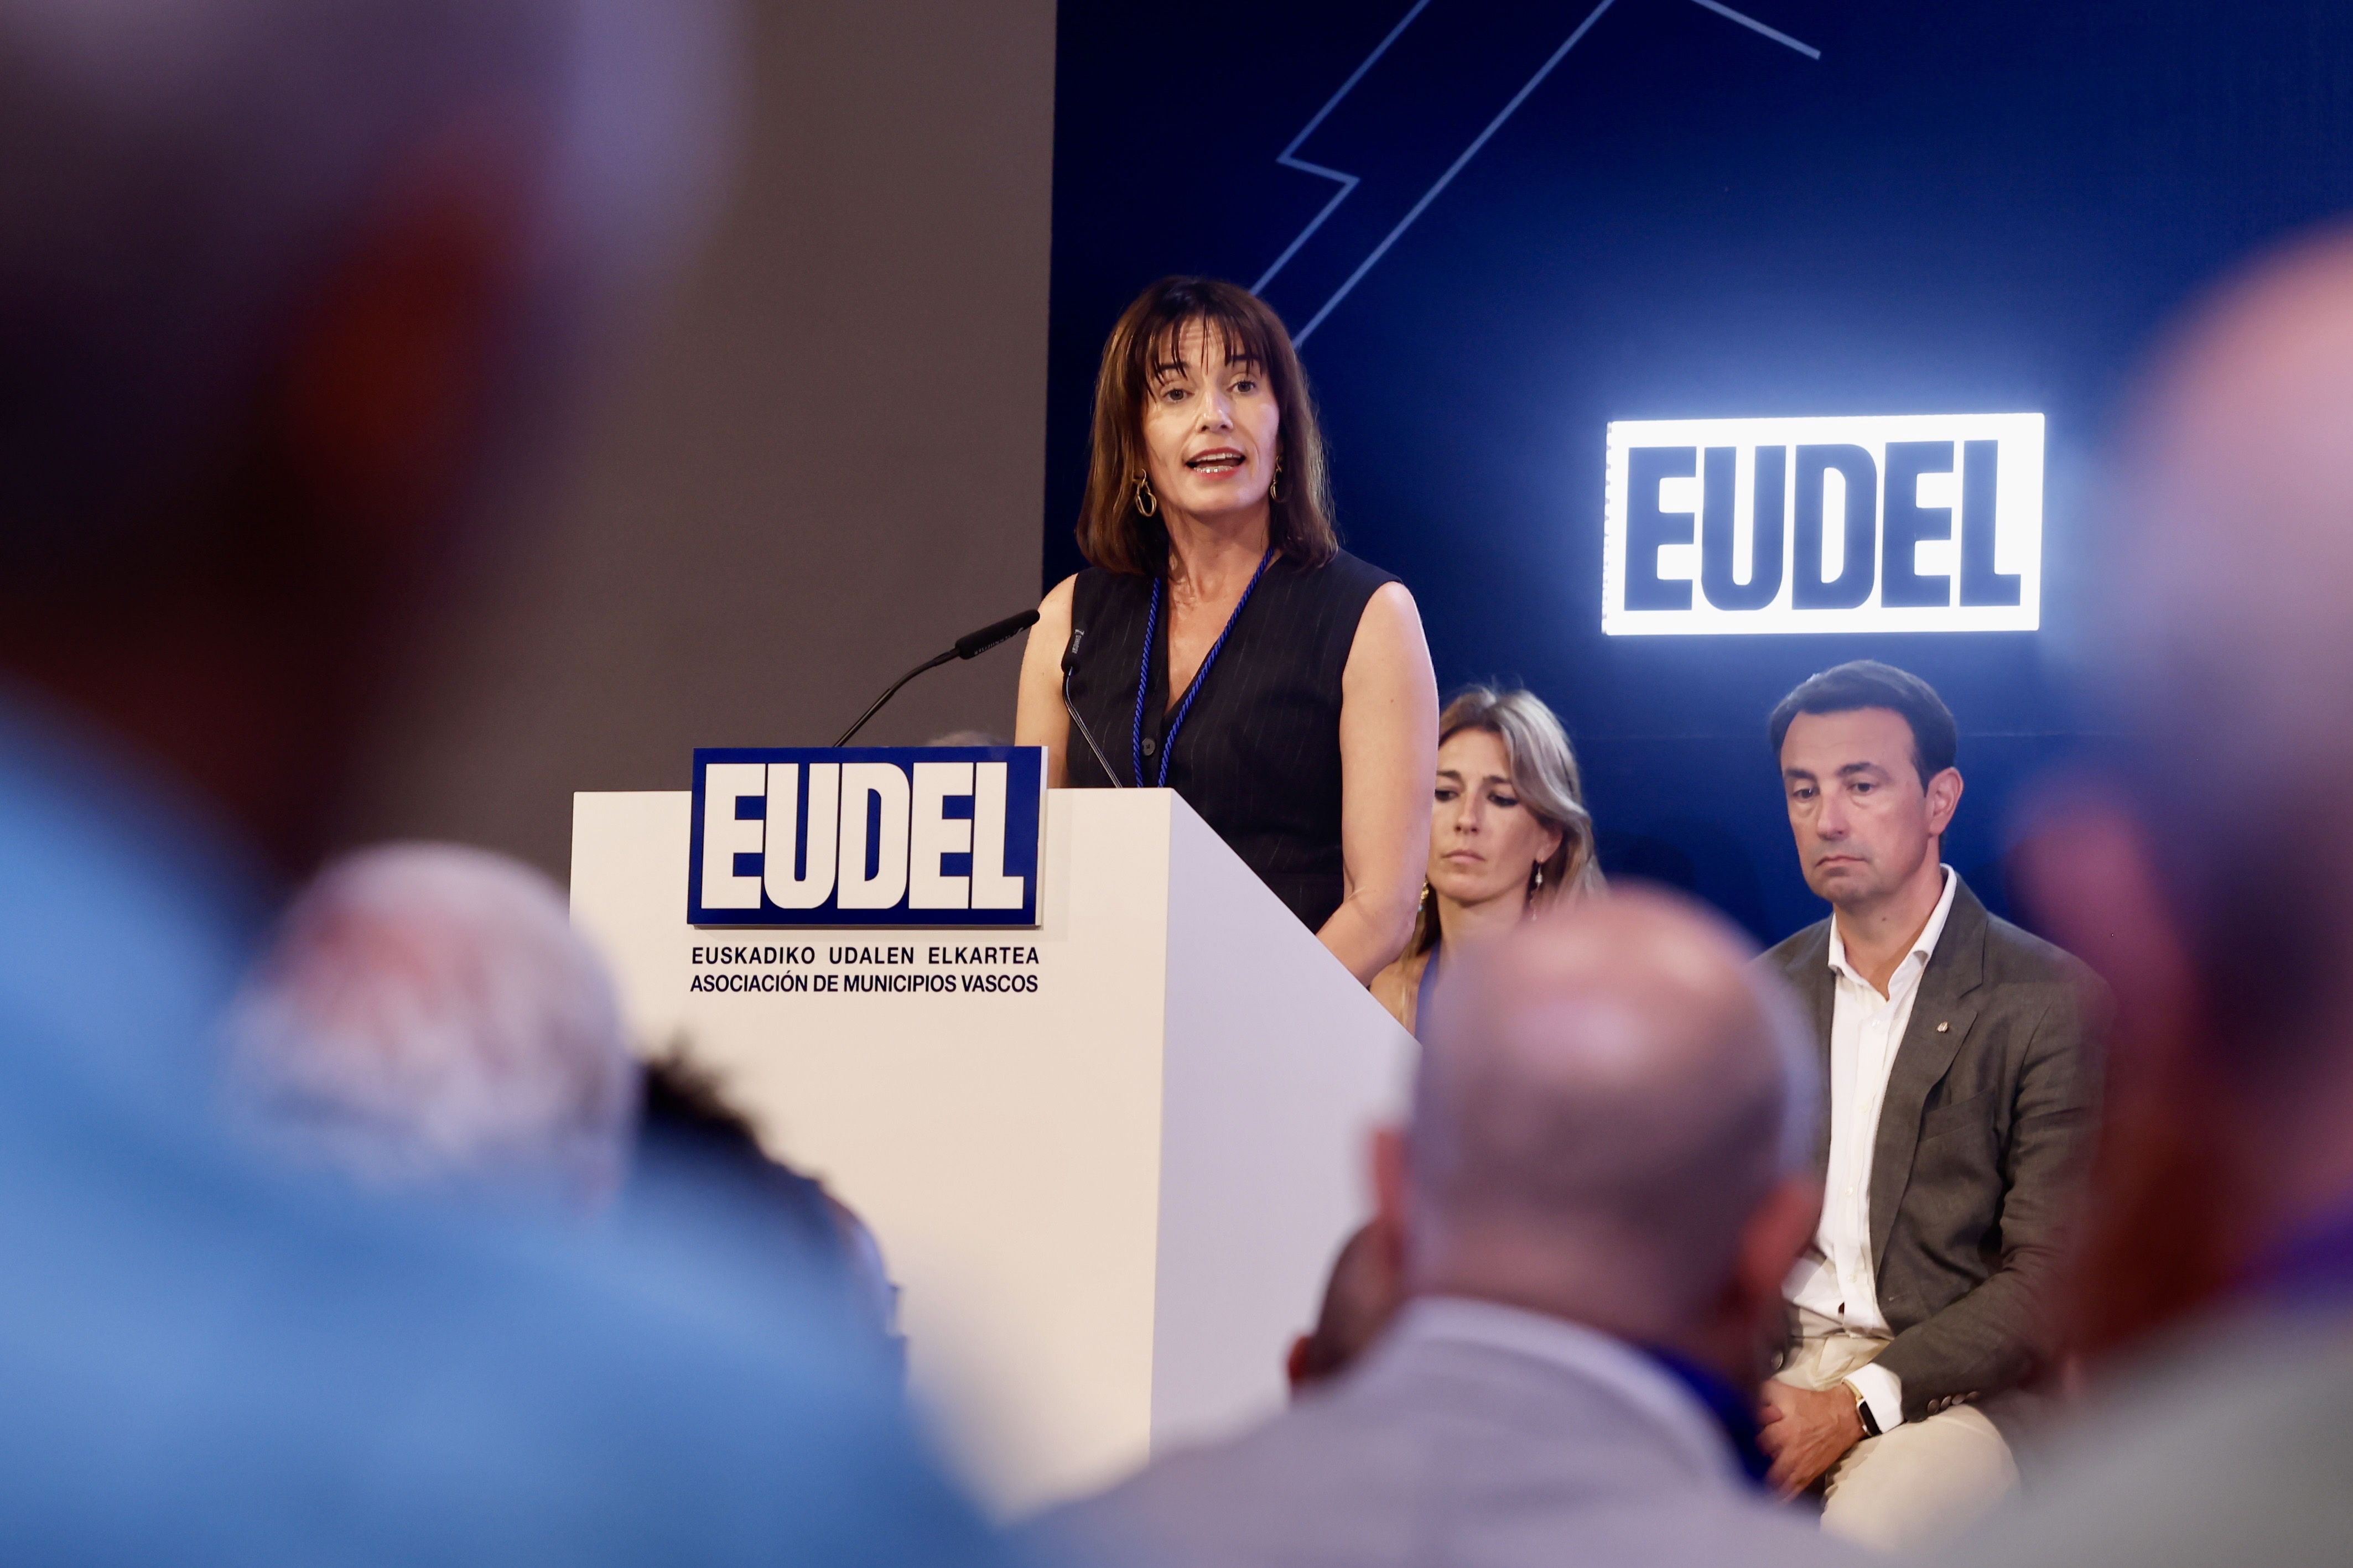 Esther Apraiz, irailean Eudeleko presidente izendatu zutenean, irailean. JAVI COLMENERO / EFE